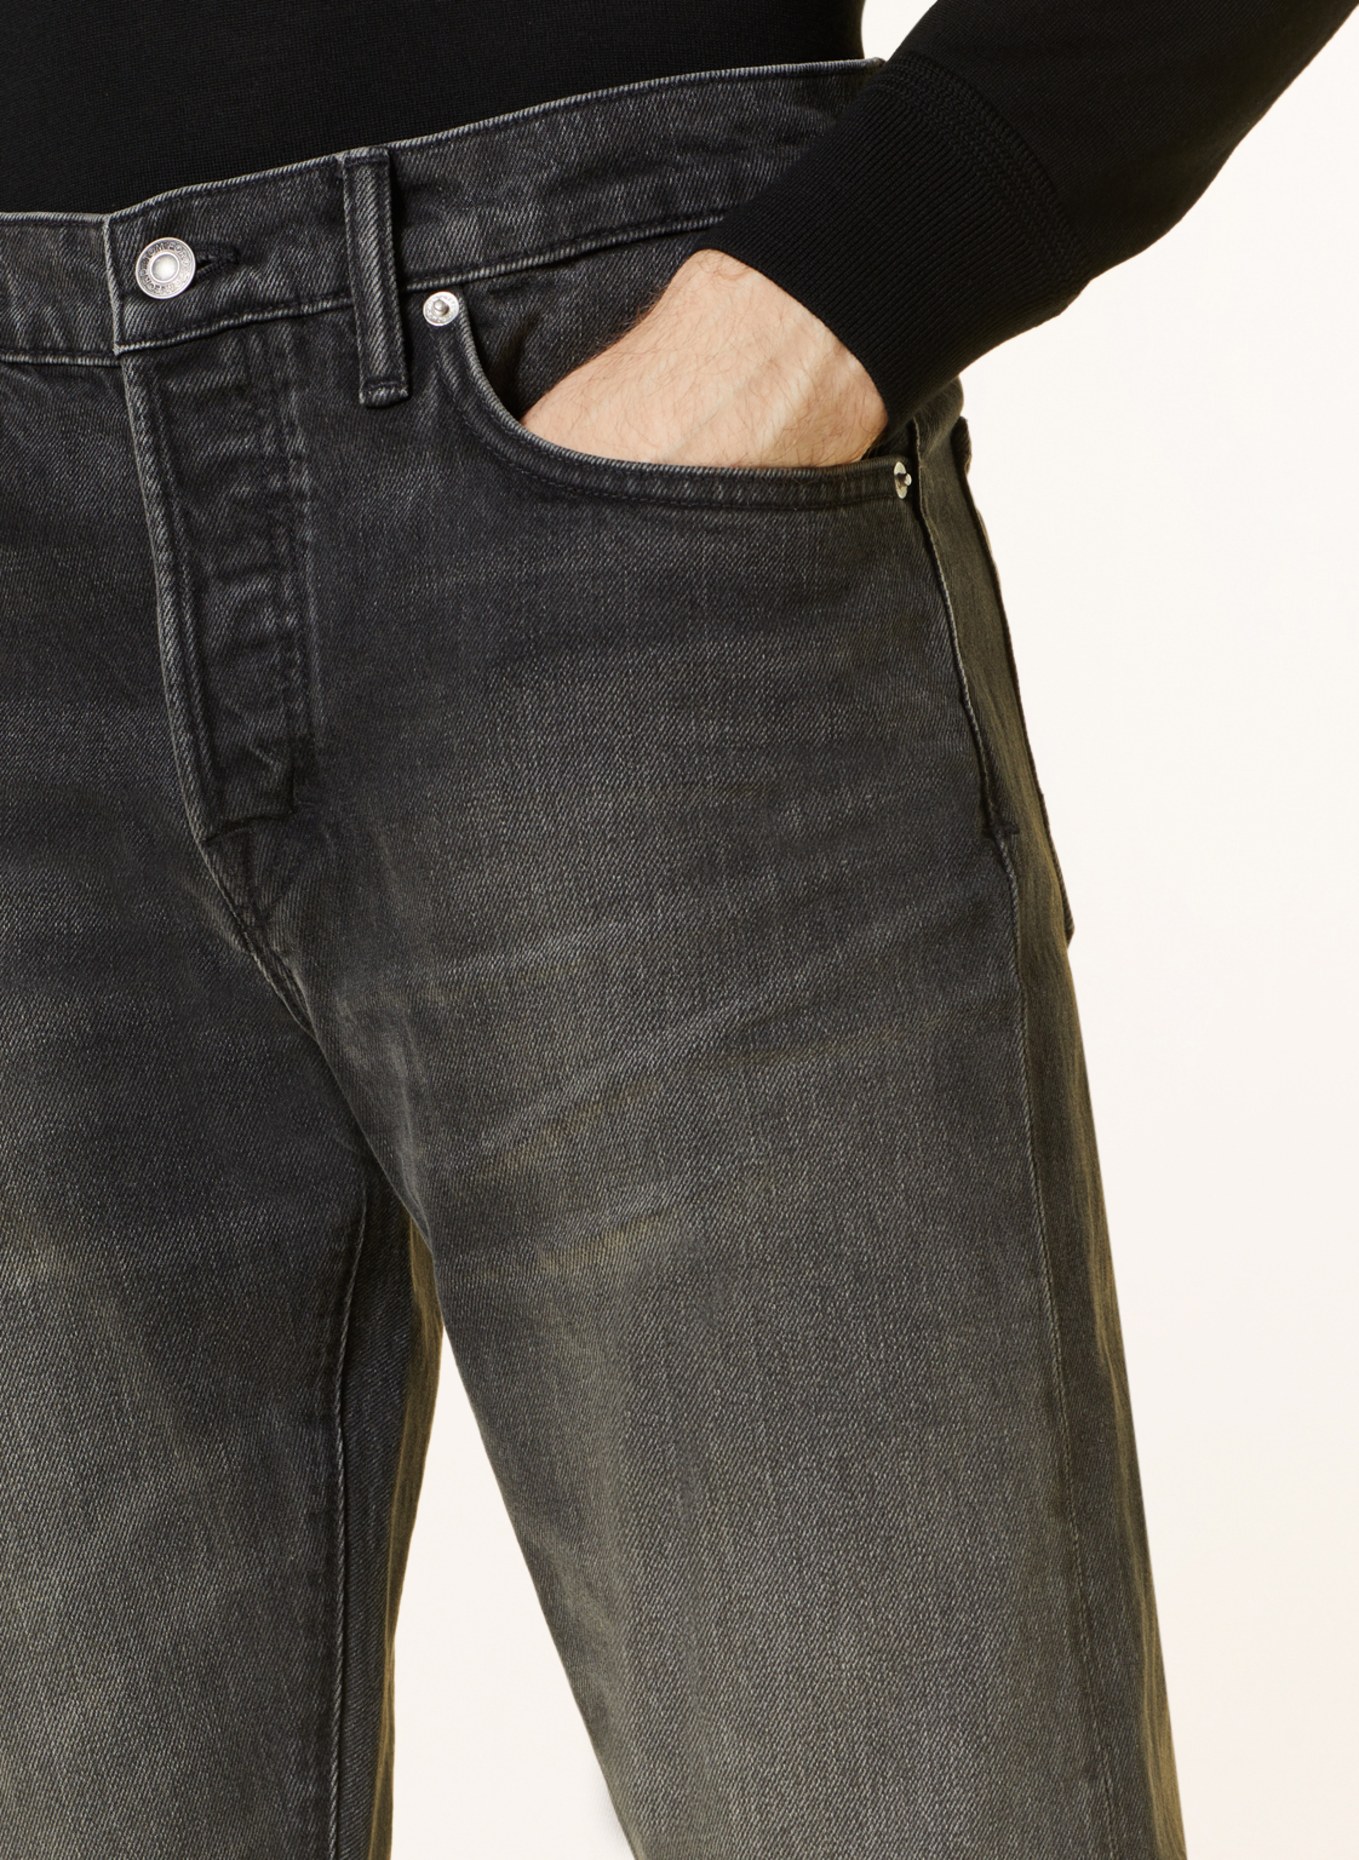 TOM FORD Jeans Slim Fit, Farbe: LB998 Special Black (Bild 5)